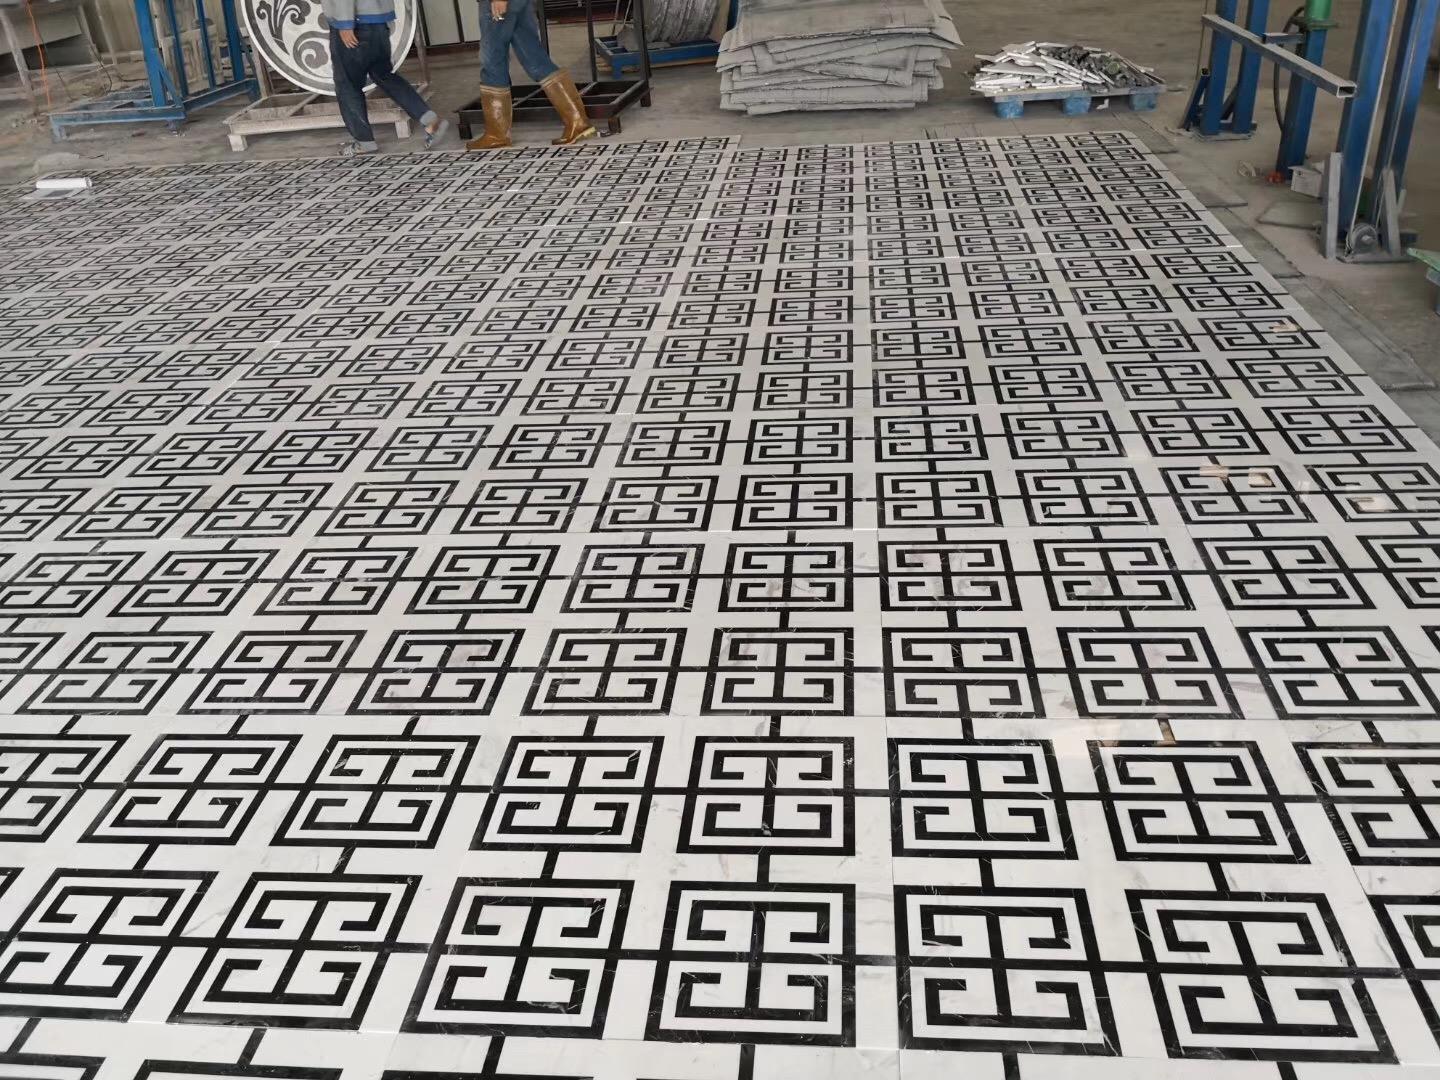 Marble Pattern Design Tiles Floors